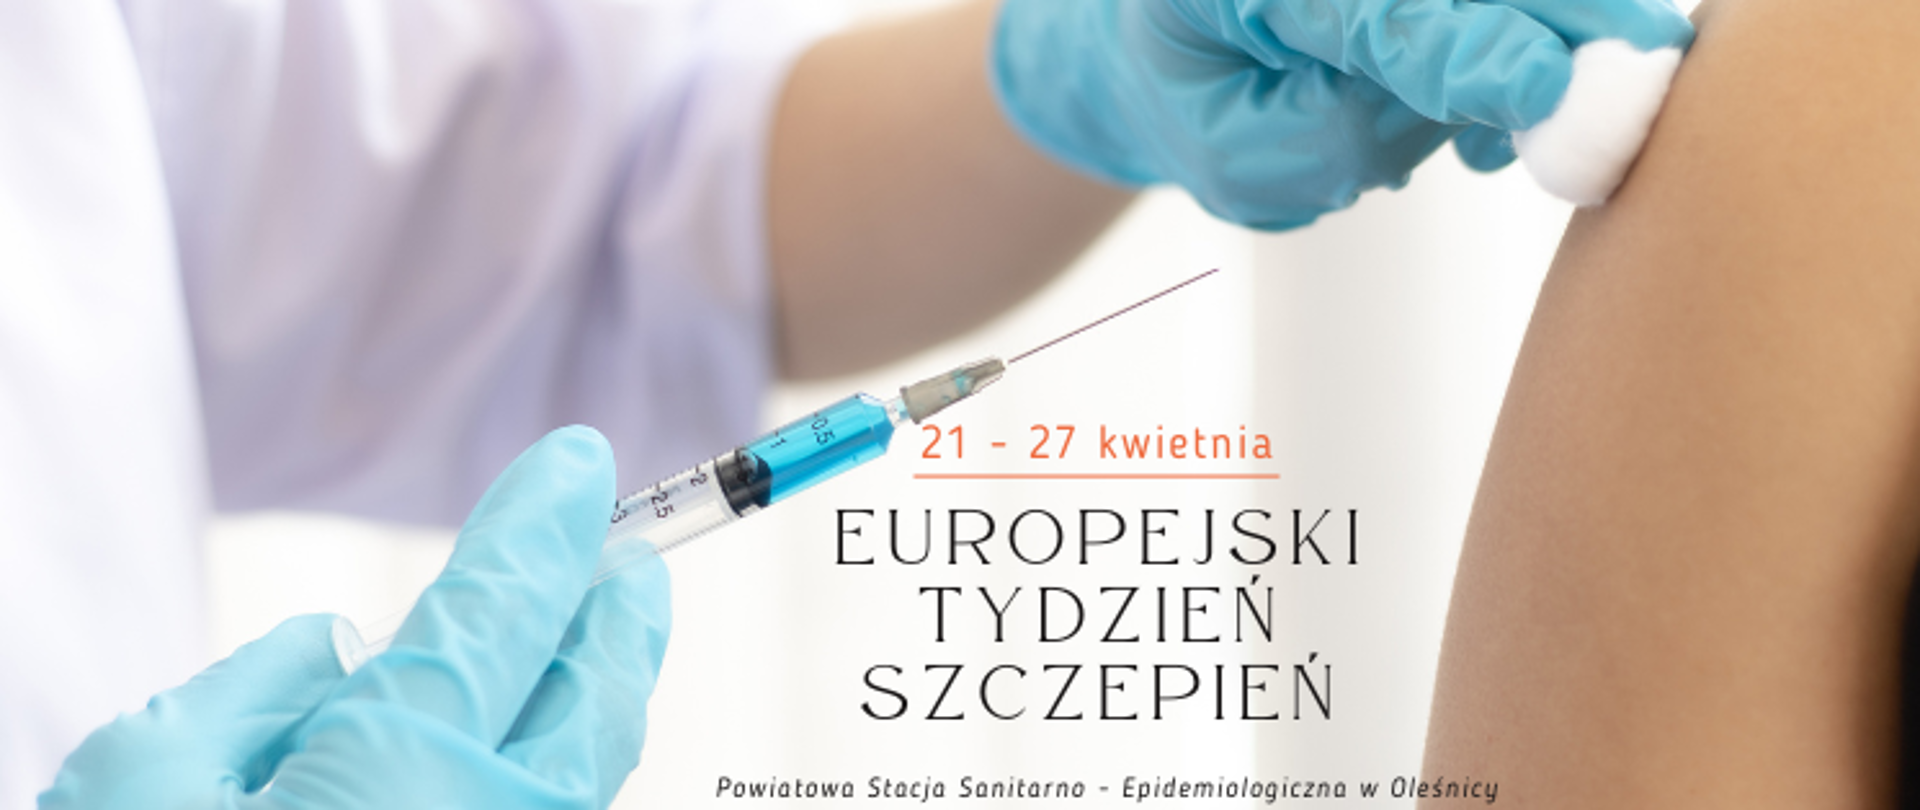 Europejski tydzień szczepień